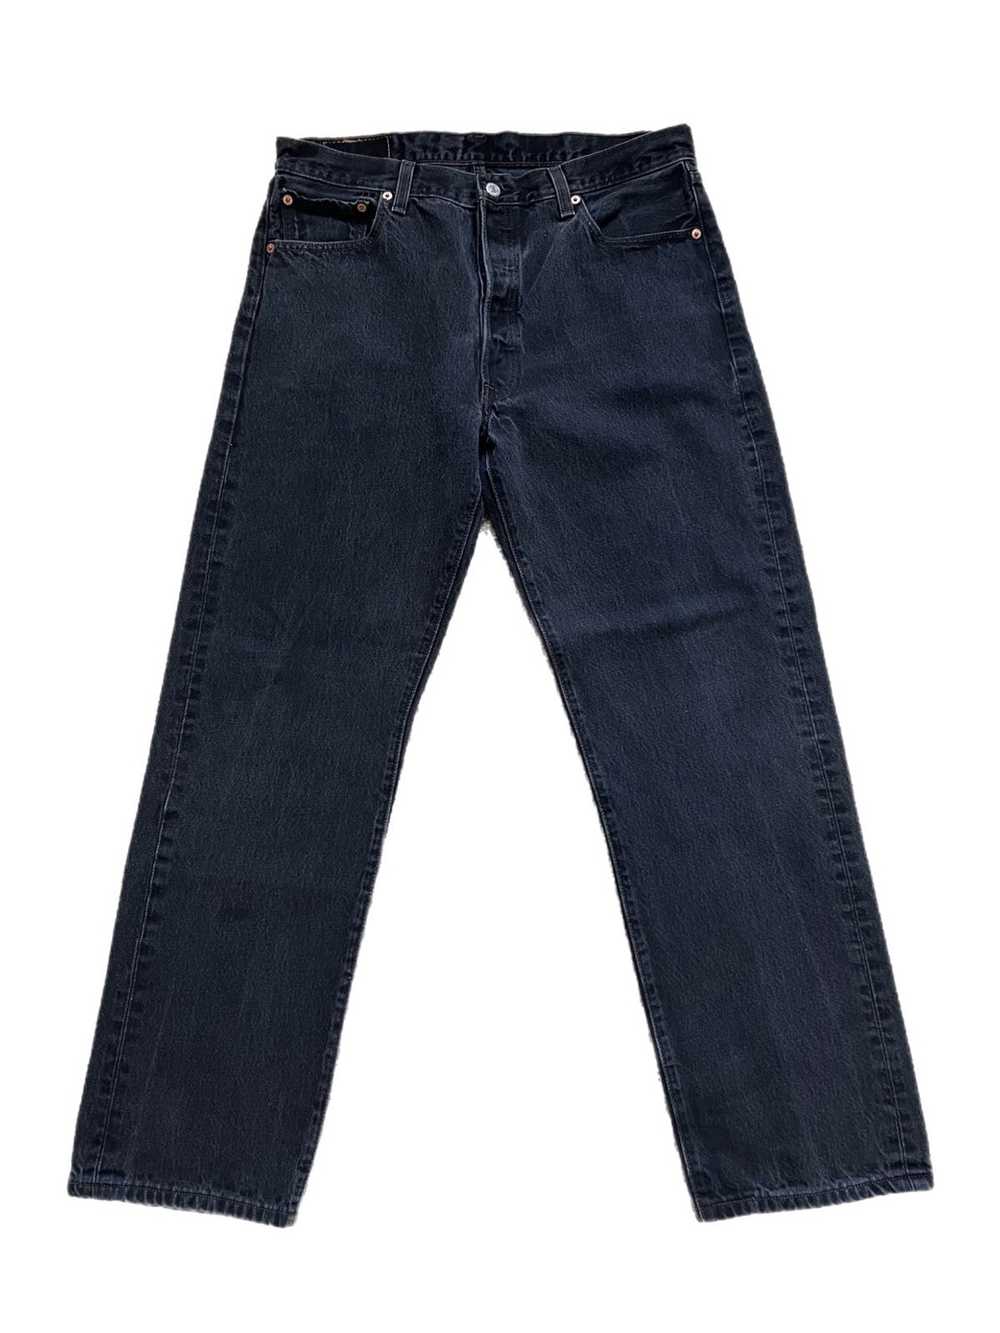 Levi's × Vintage Vintage 501 Black Denim Jeans - image 3